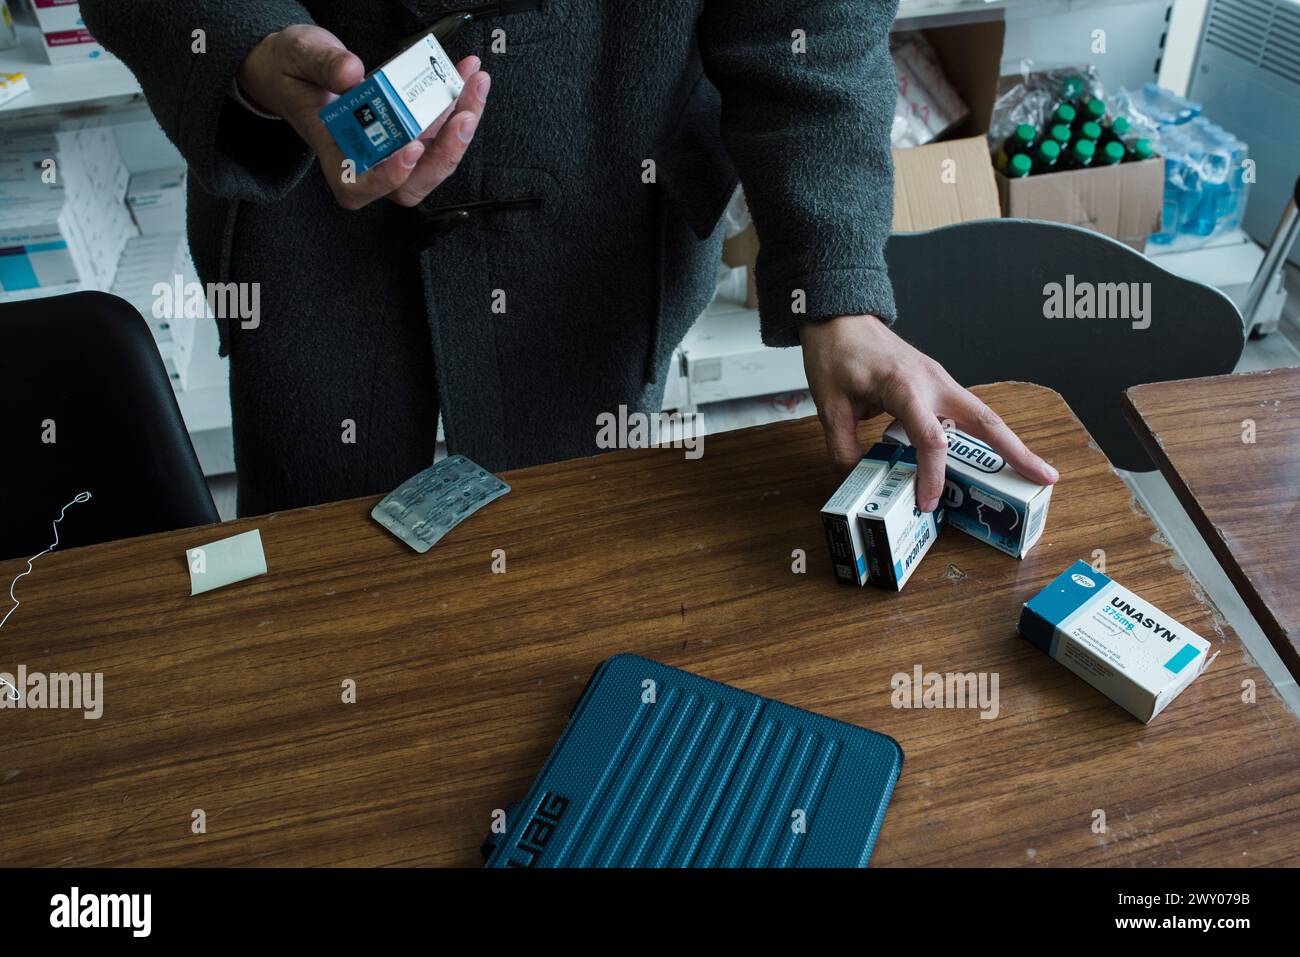 Escasez de drogas en Ismail Ucrania. Fotos tomadas en una farmacia local el 10 de marzo de 2022. Foto de stock